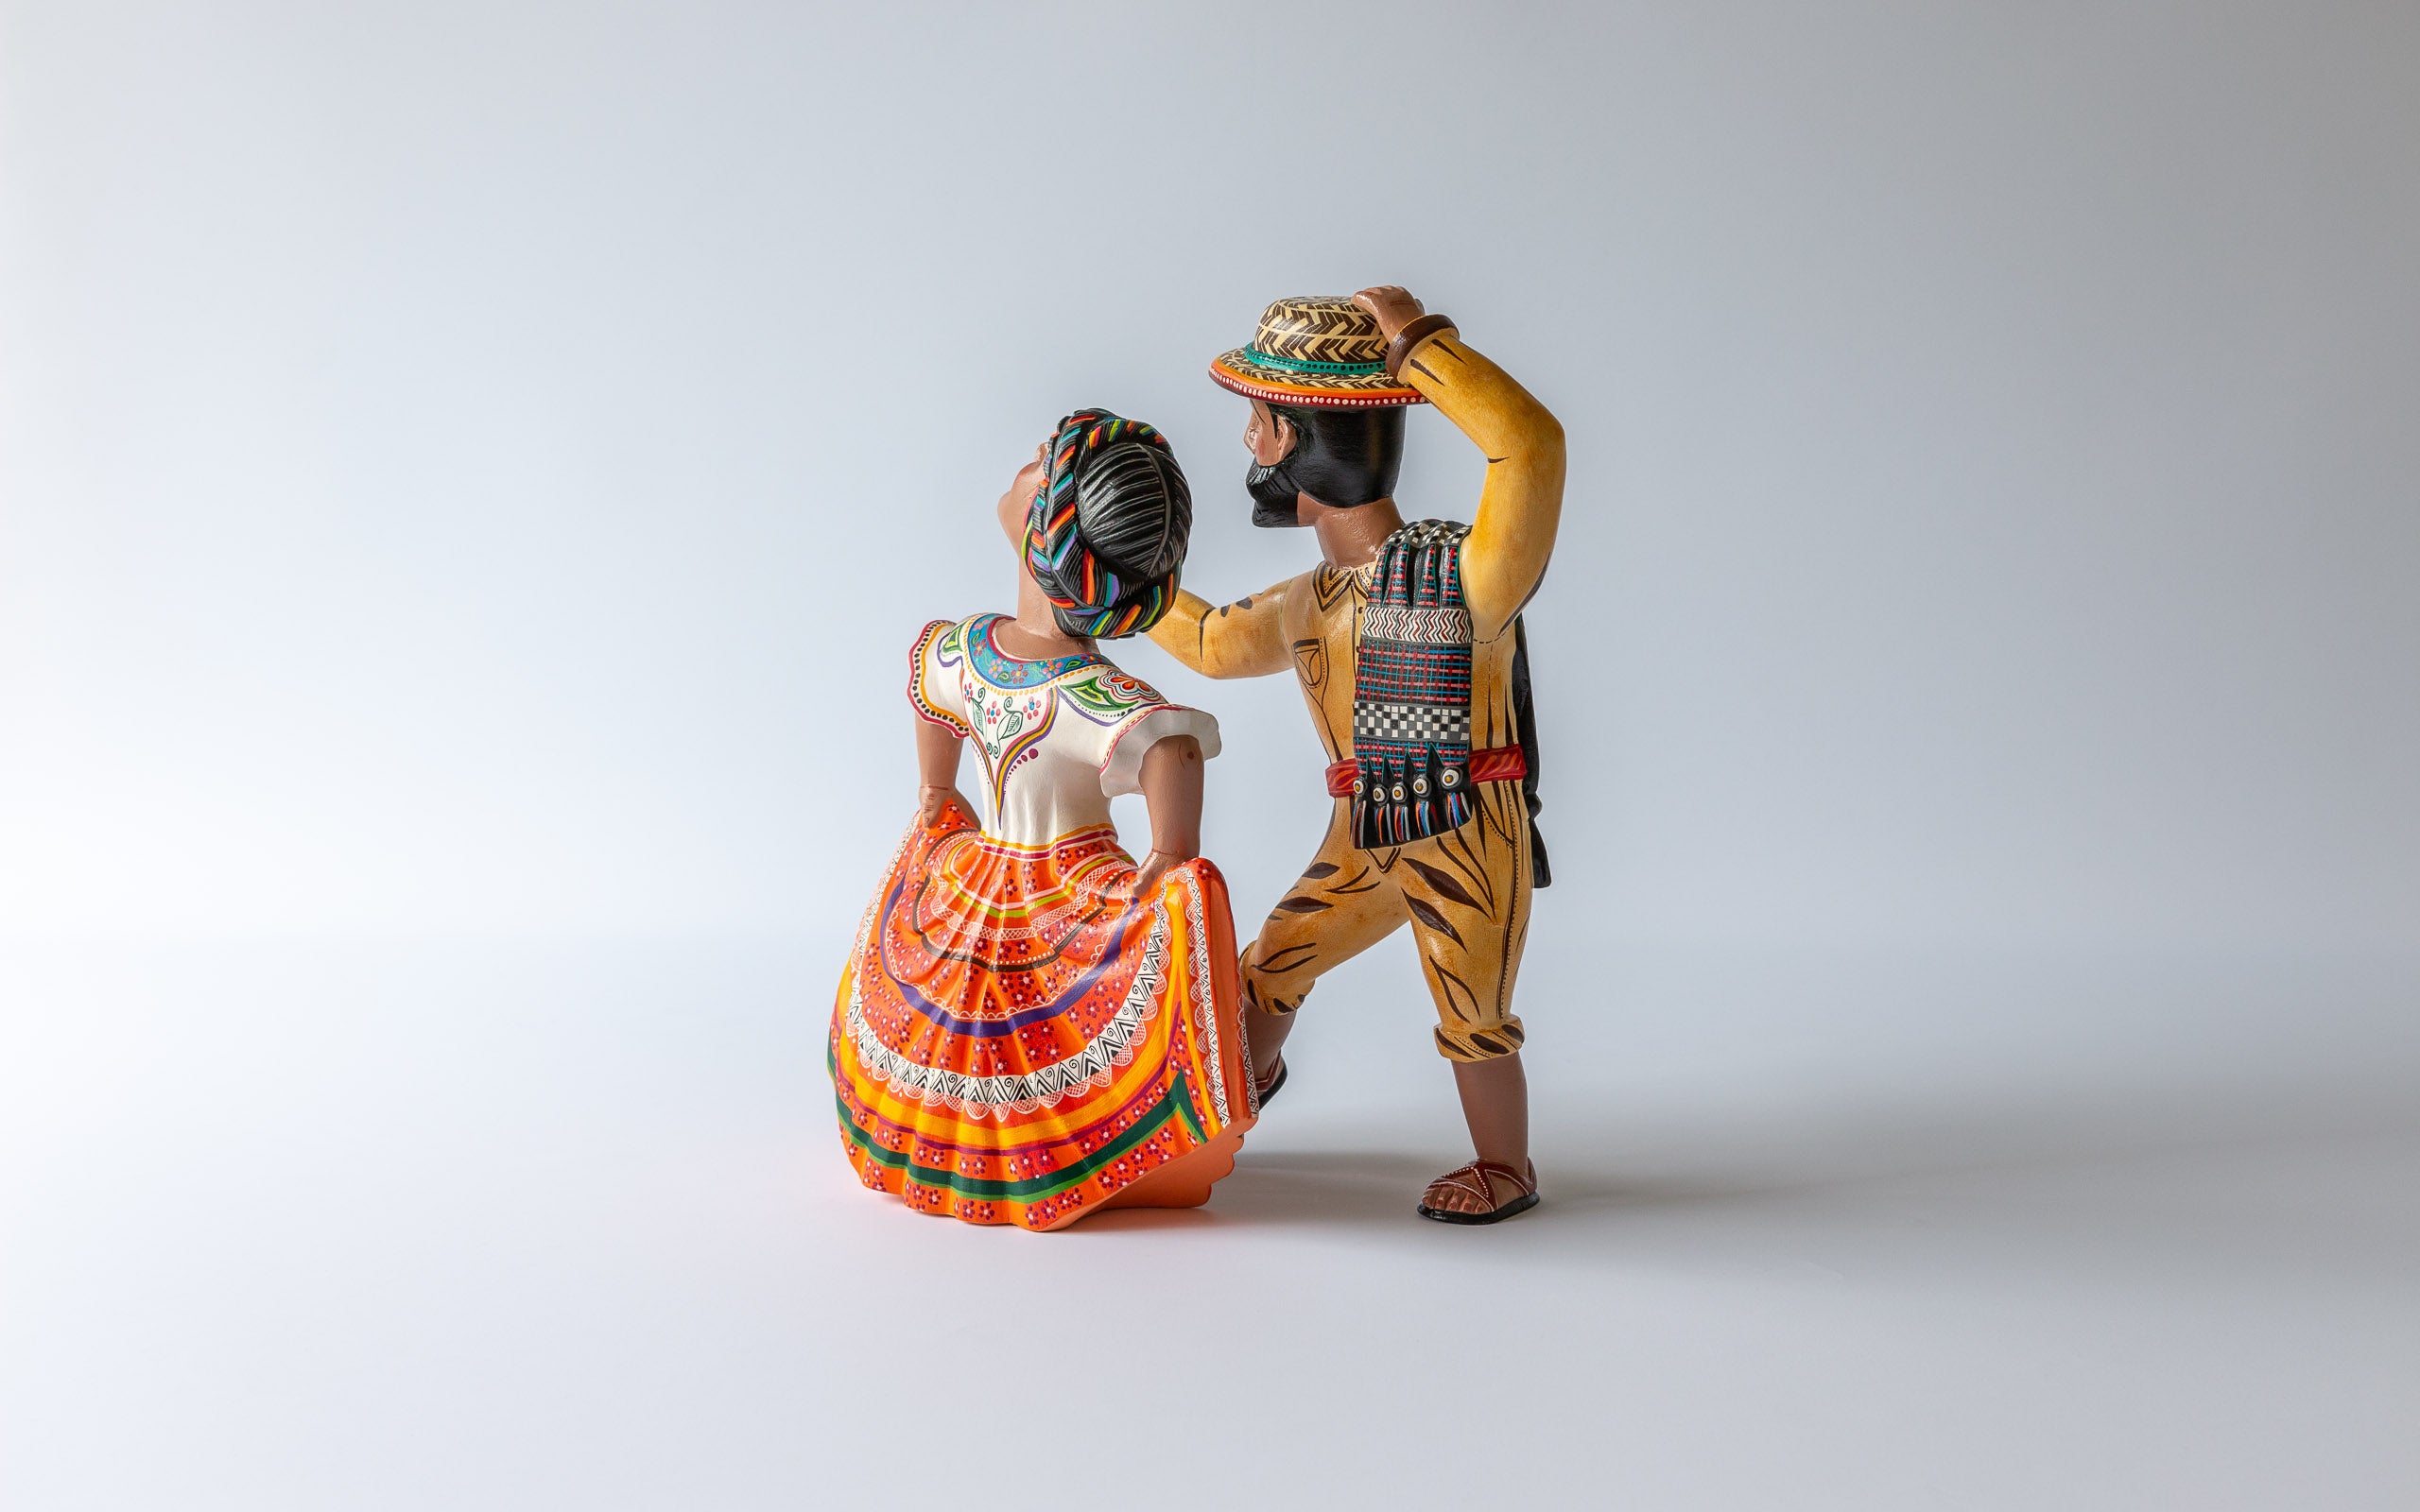 Traditionelle Tänzer: Weitere Sicht auf das Tänzer Paar